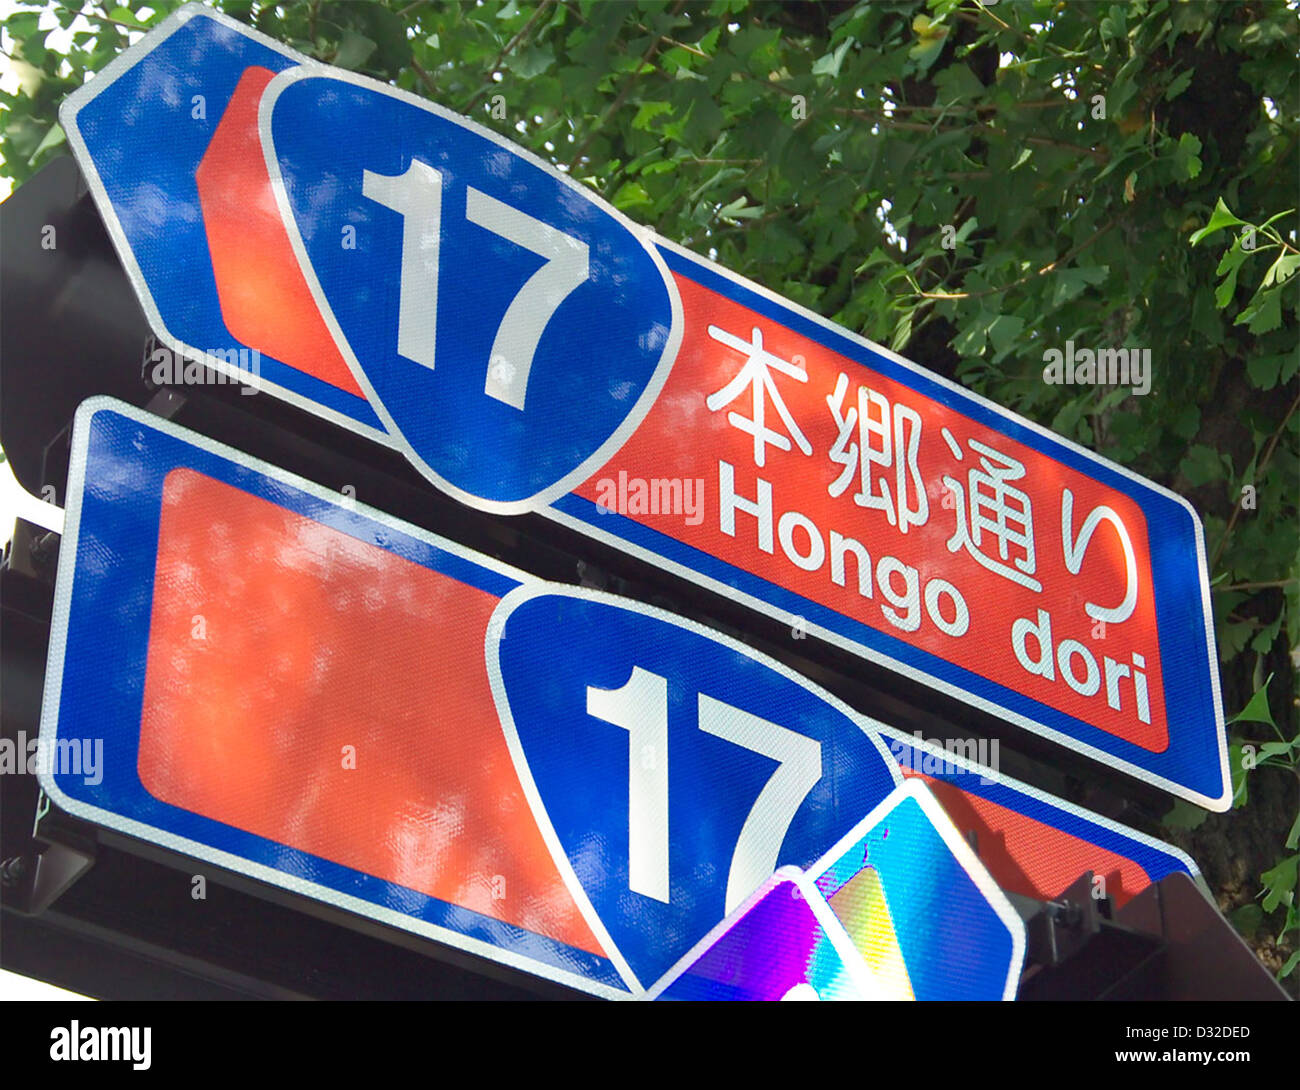 Cartello stradale per la strada nazionale 17 (Giappone), Hongo Dori, Bunkyo, Tokyo, Giappone. Foto Stock